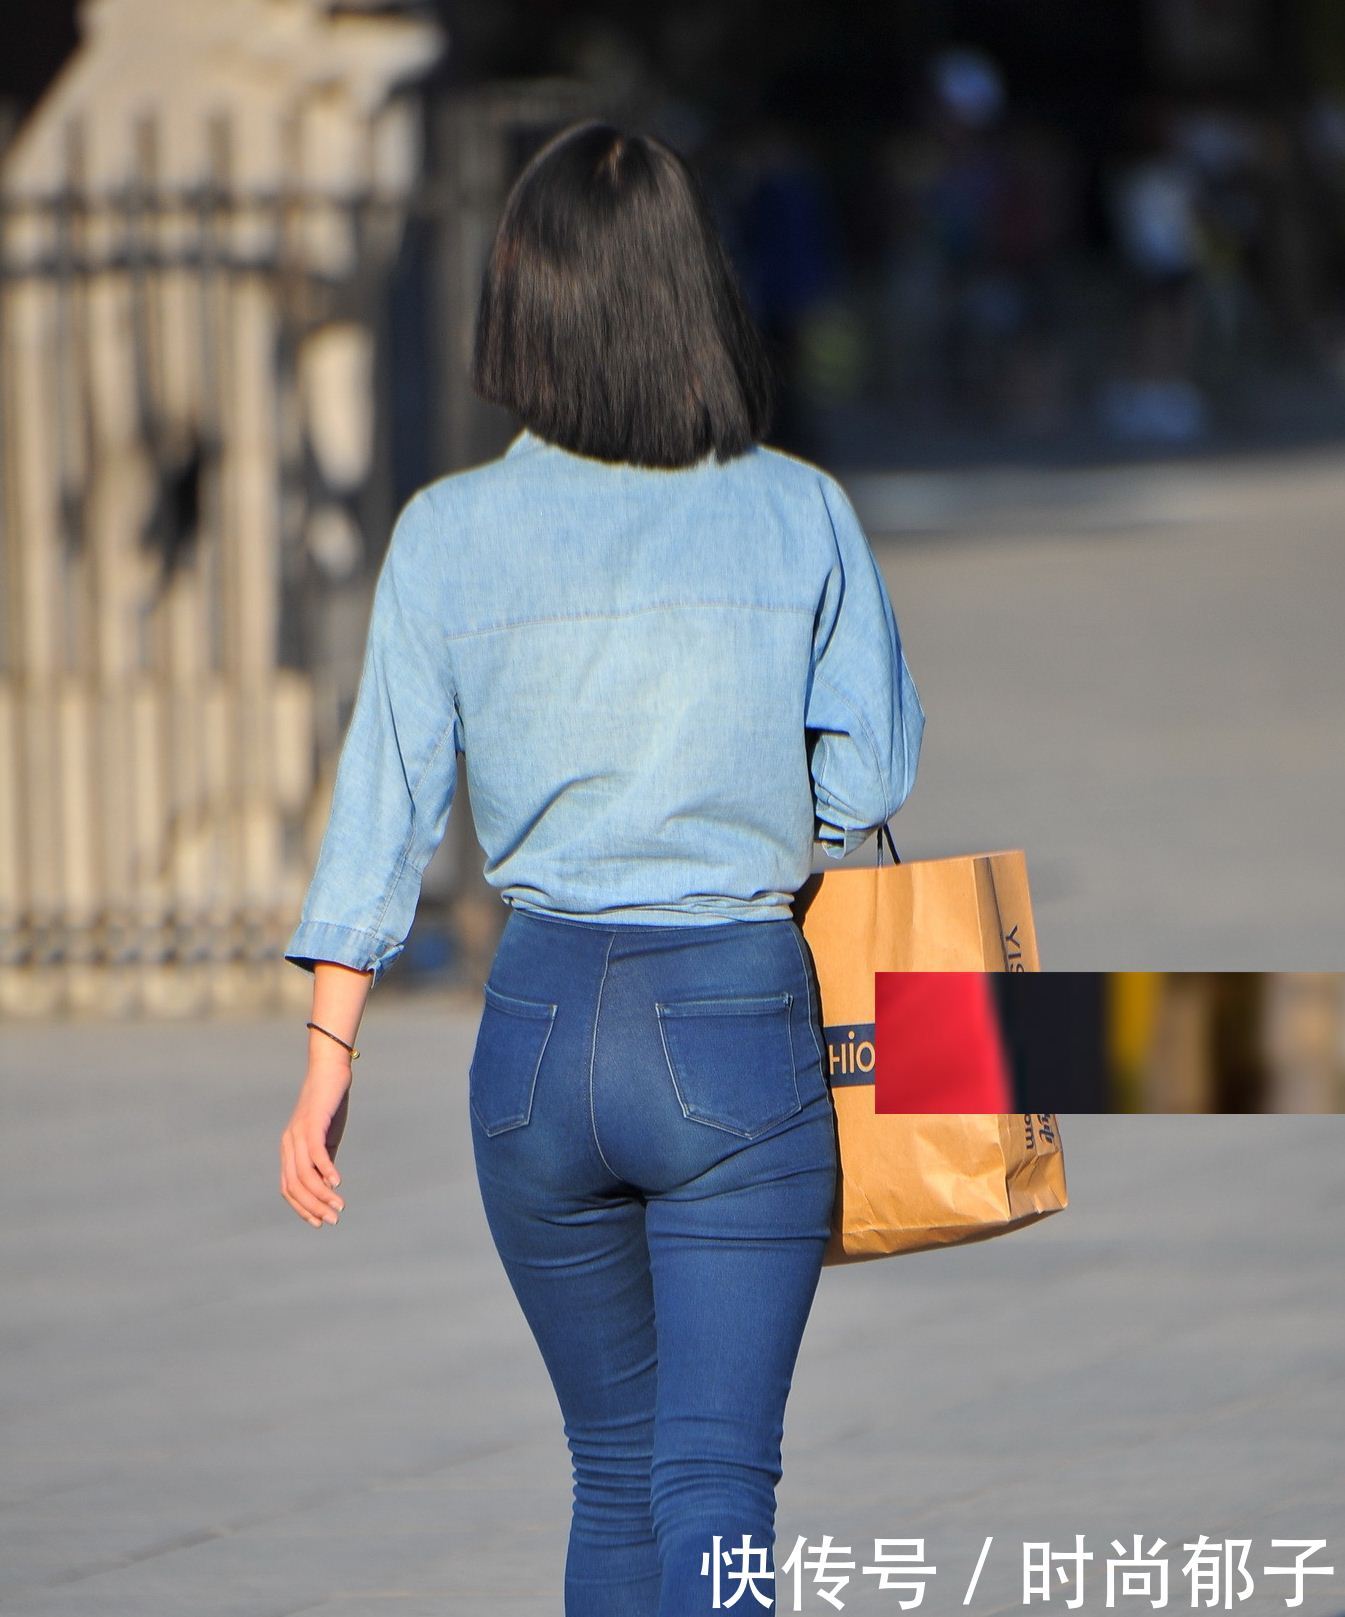 时尚摄影:穿蓝色紧身牛仔裤的美女,大家猜猜她